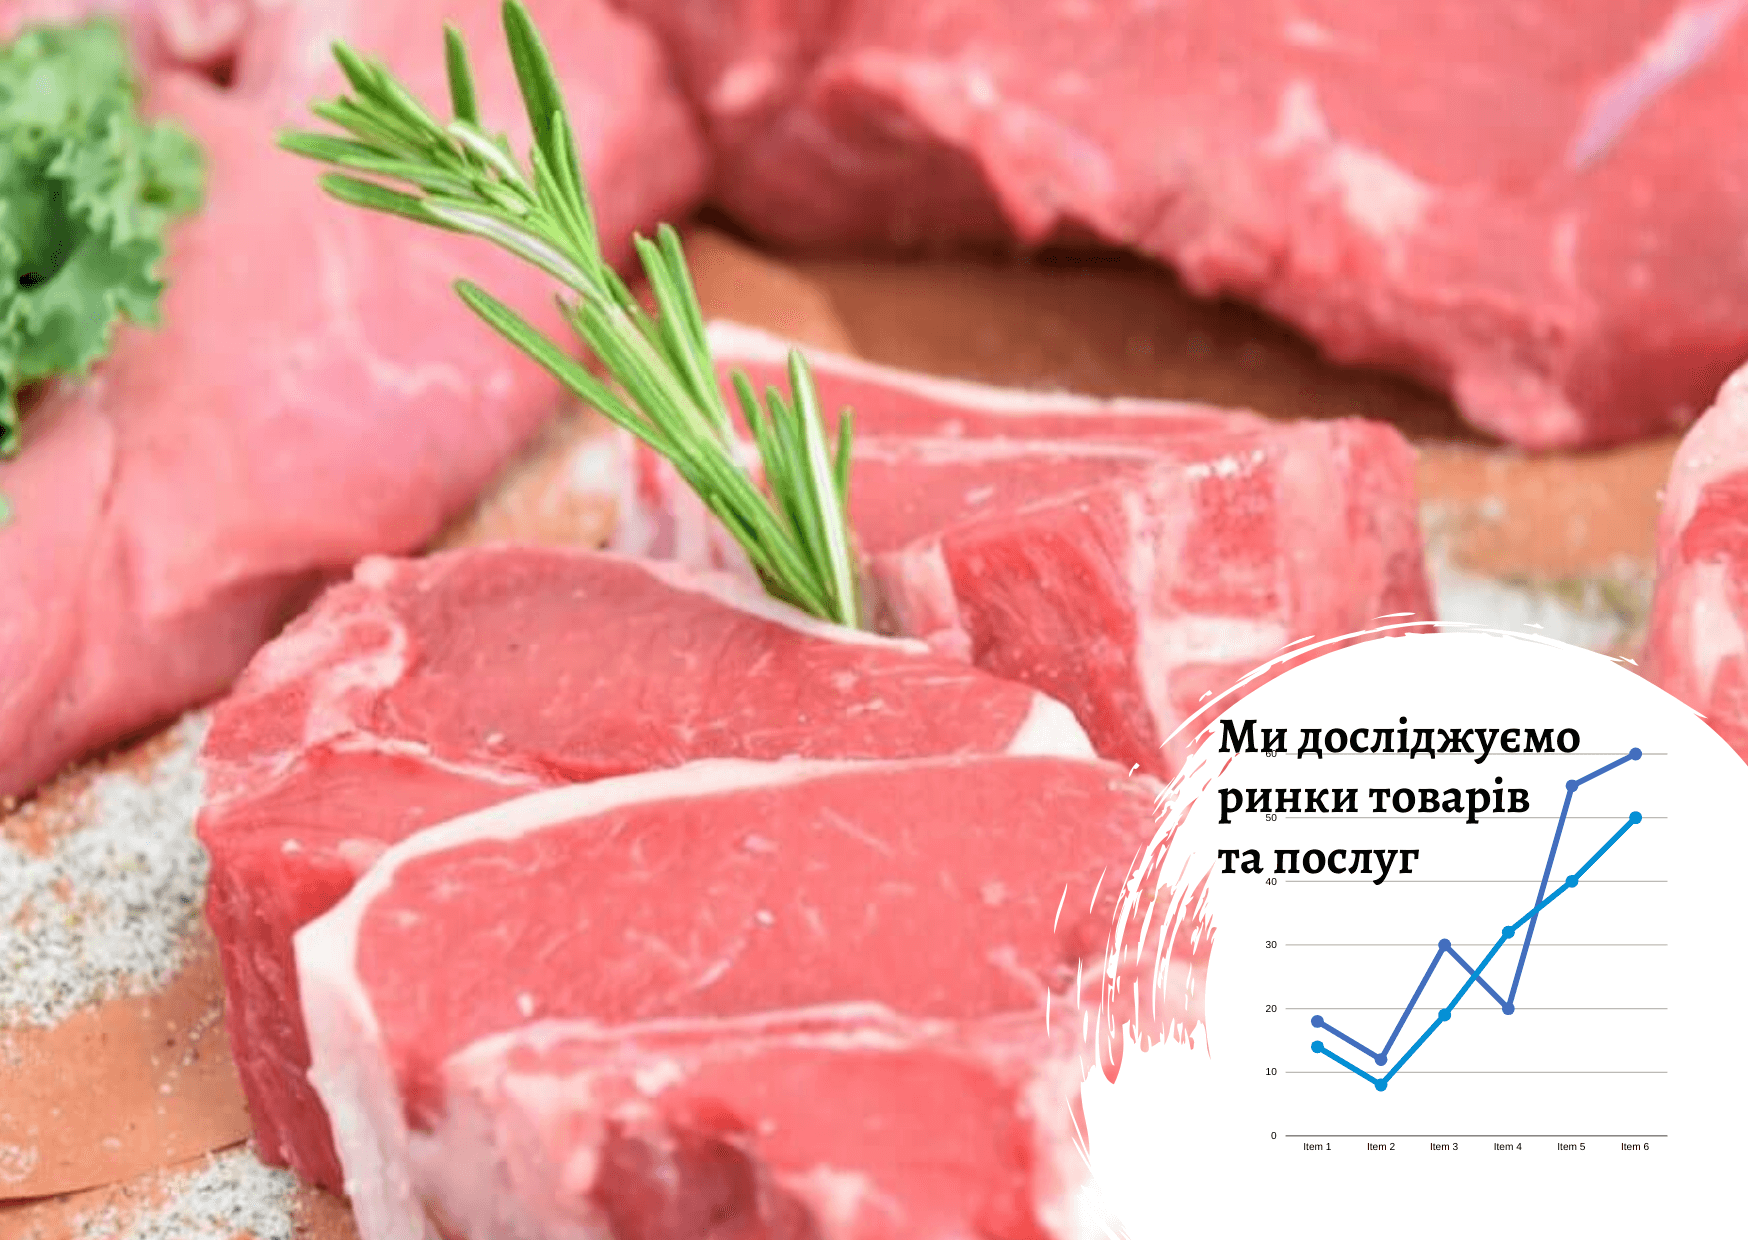  Рынок свежего мяса, копченостей и консервов в Украине: основные факторы 